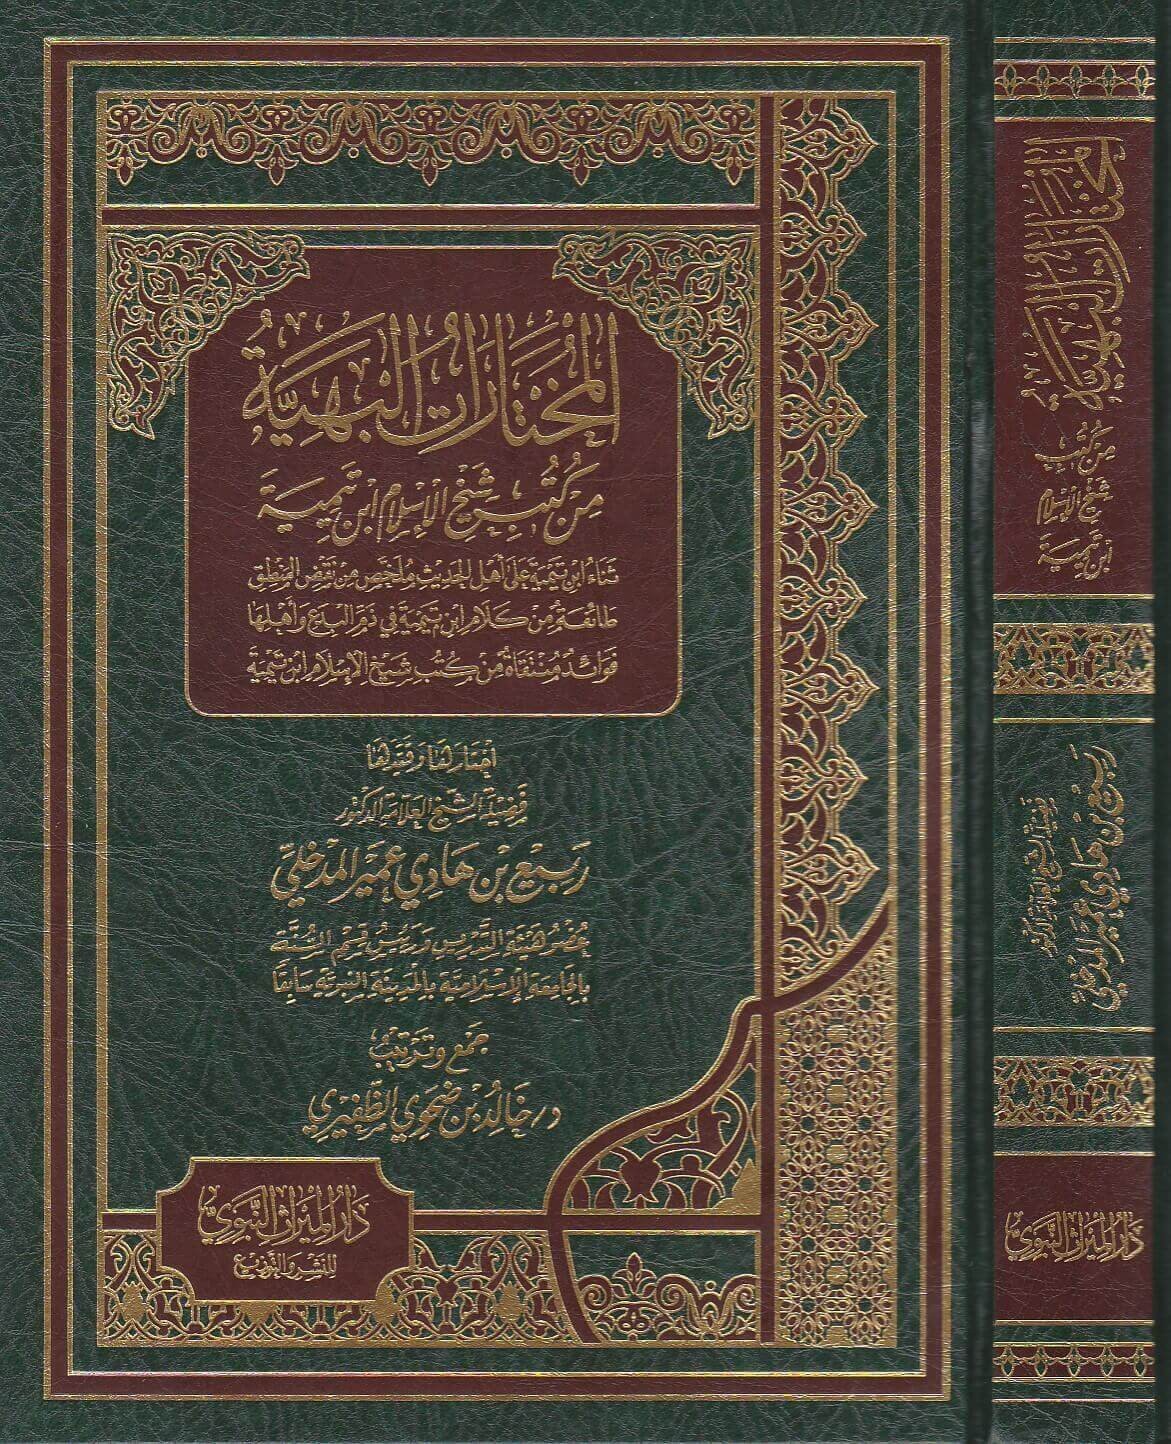 المختارات البهية من كتب شيخ الإسلام ابن تيميه